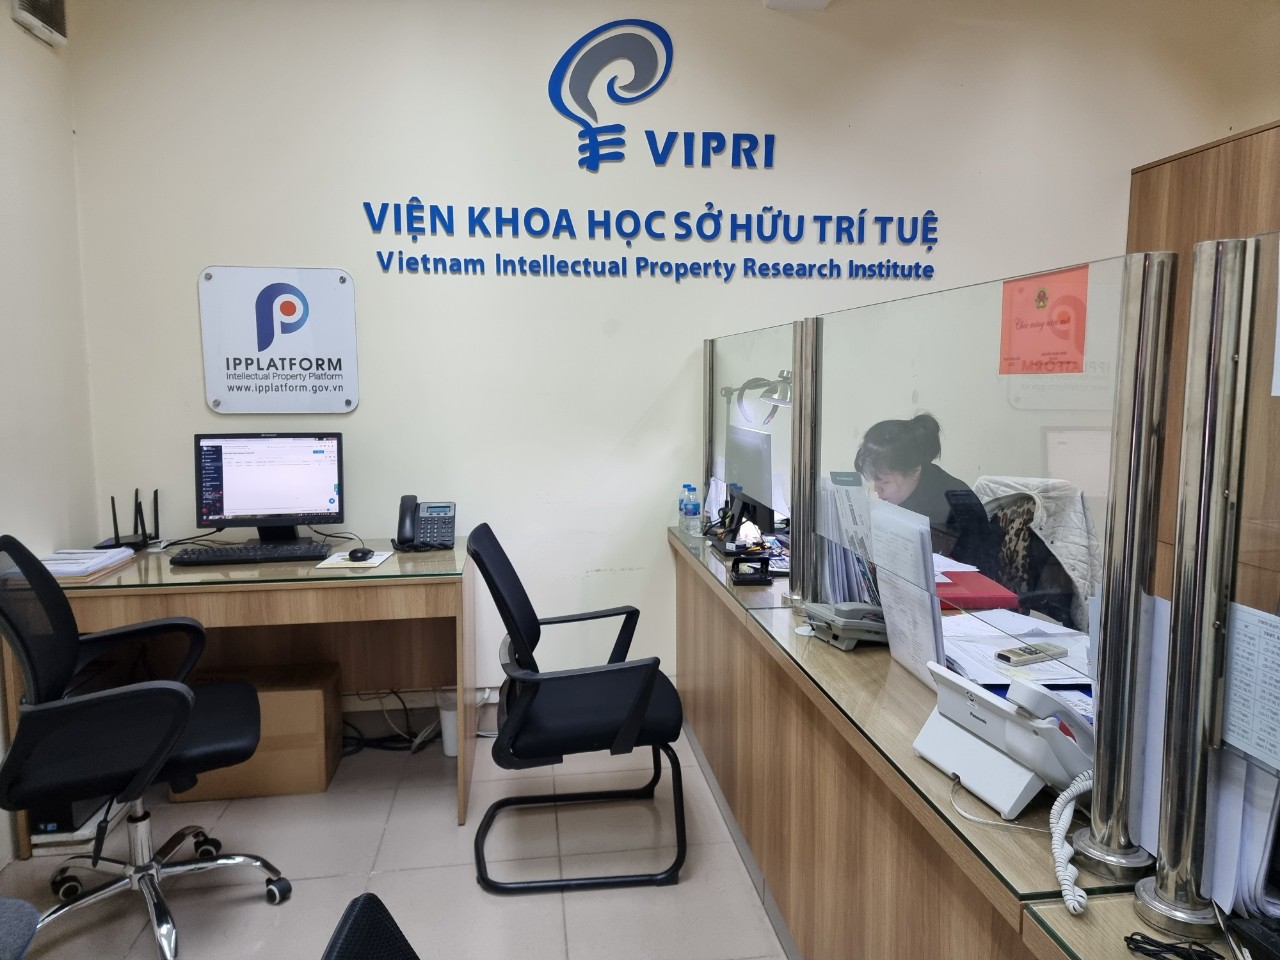 Vietnam Intellectual Property Research Institute